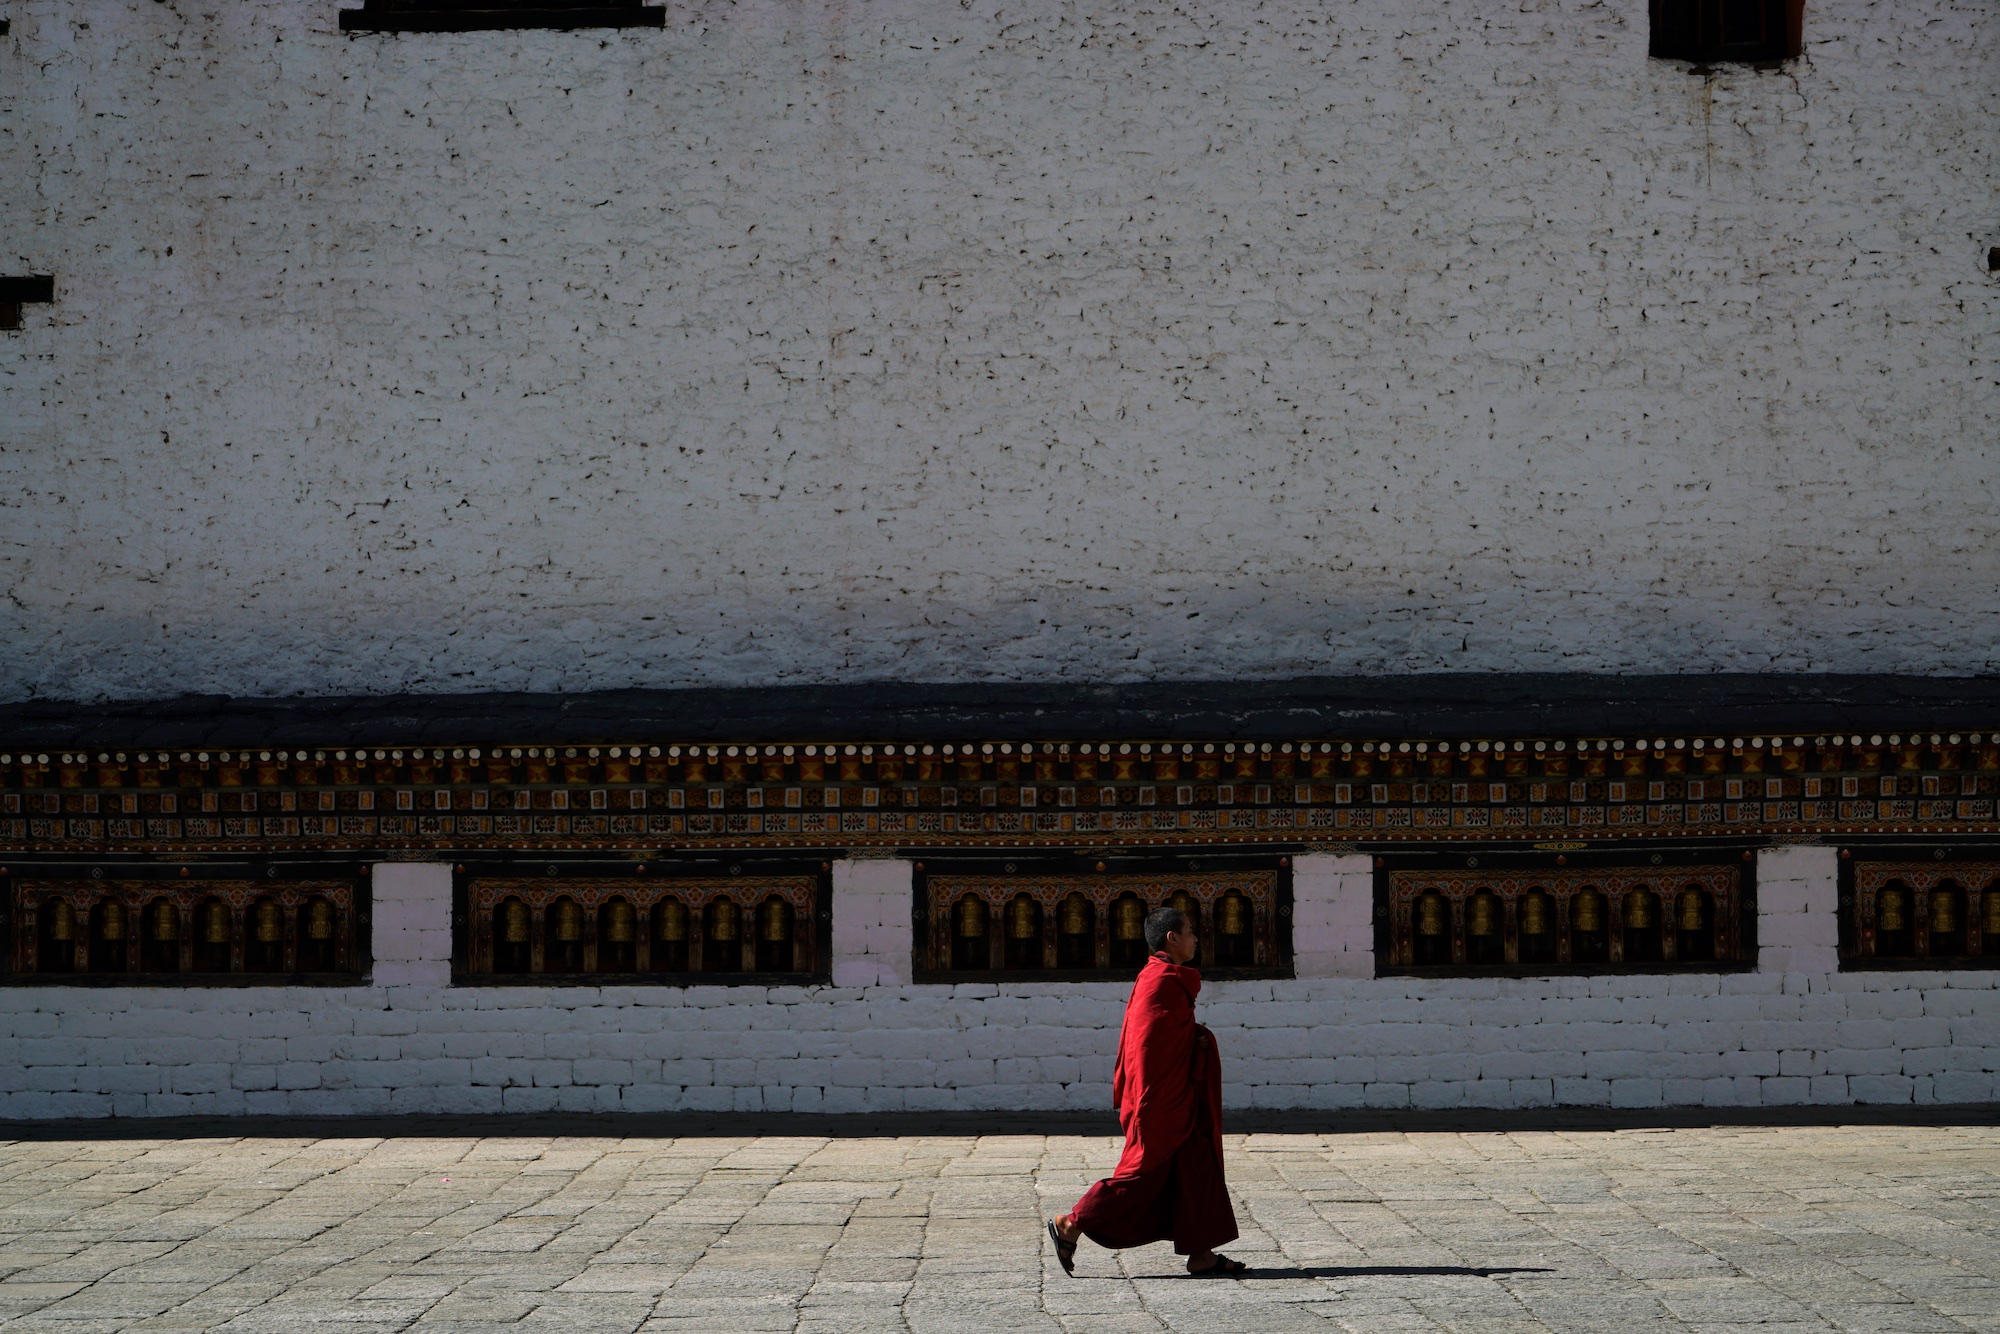 Bhutan-11-17-16a- DSC04369.jpg